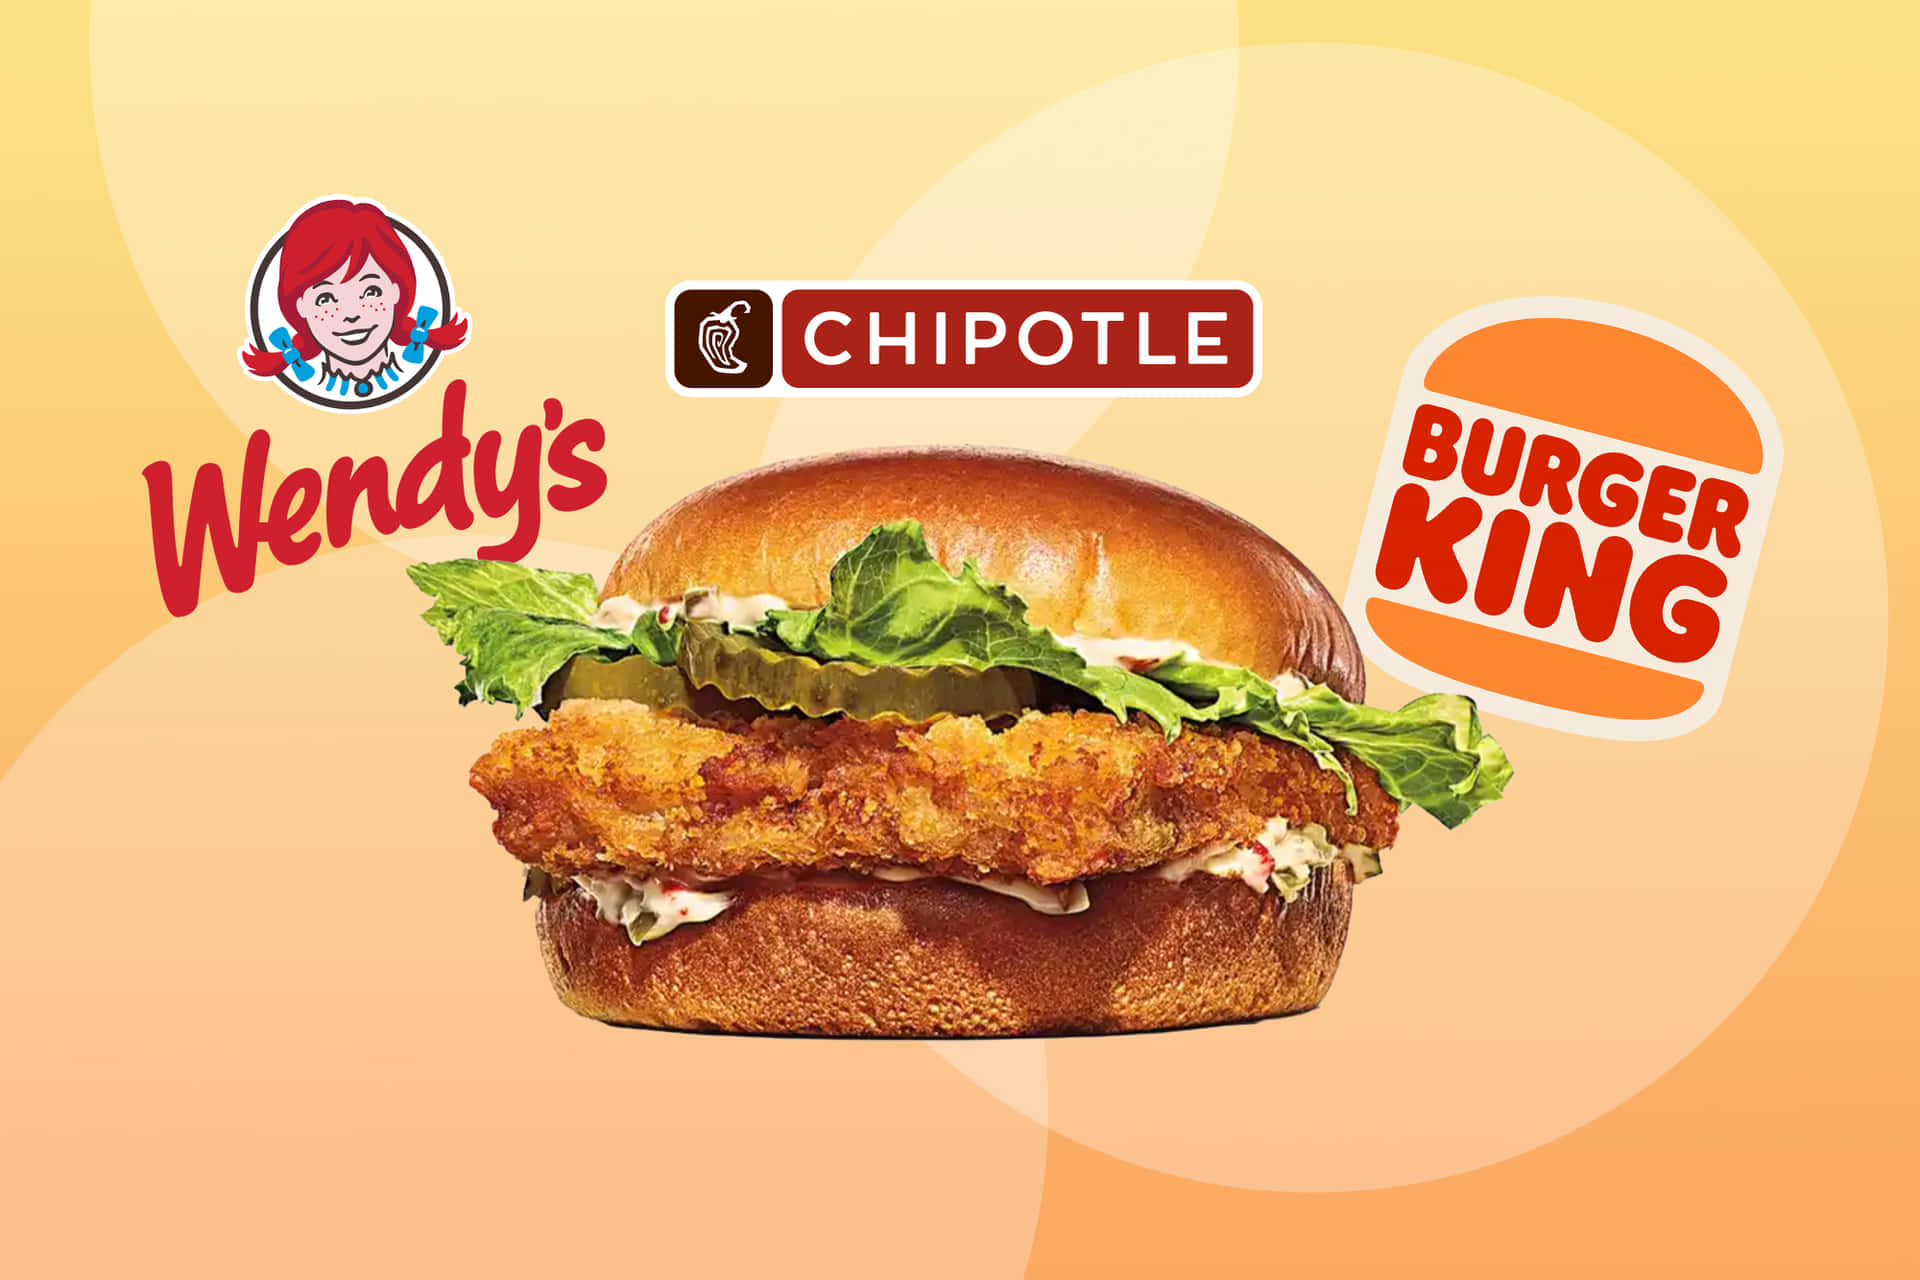 Ilmercoledì Del Burger King E Il Re Del Chipotle